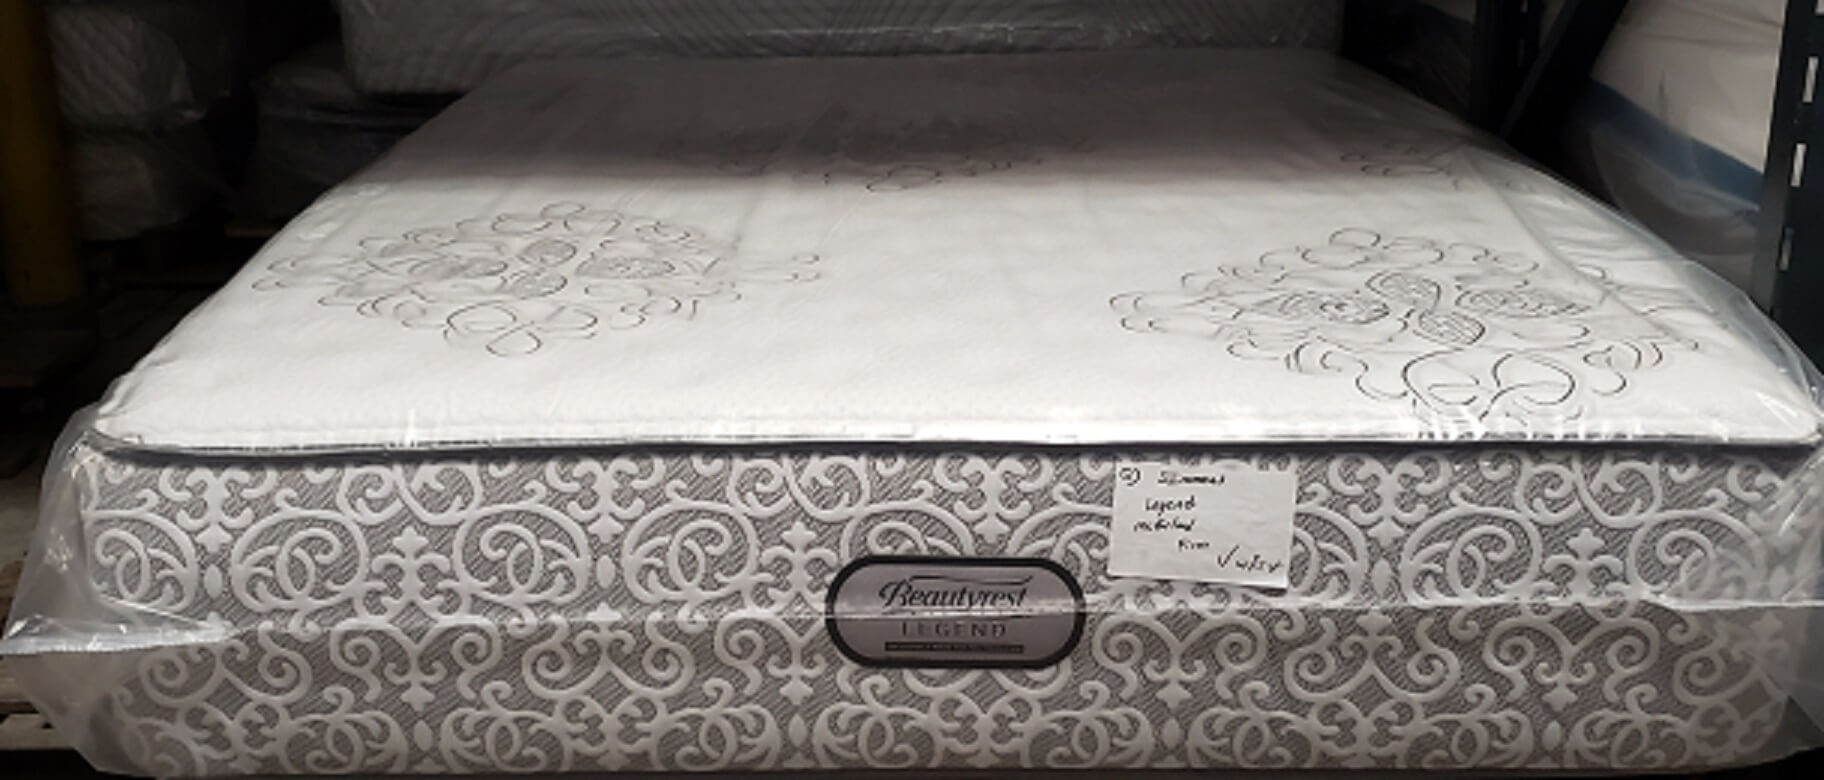 bedding for simmons mcfarland legend mattress